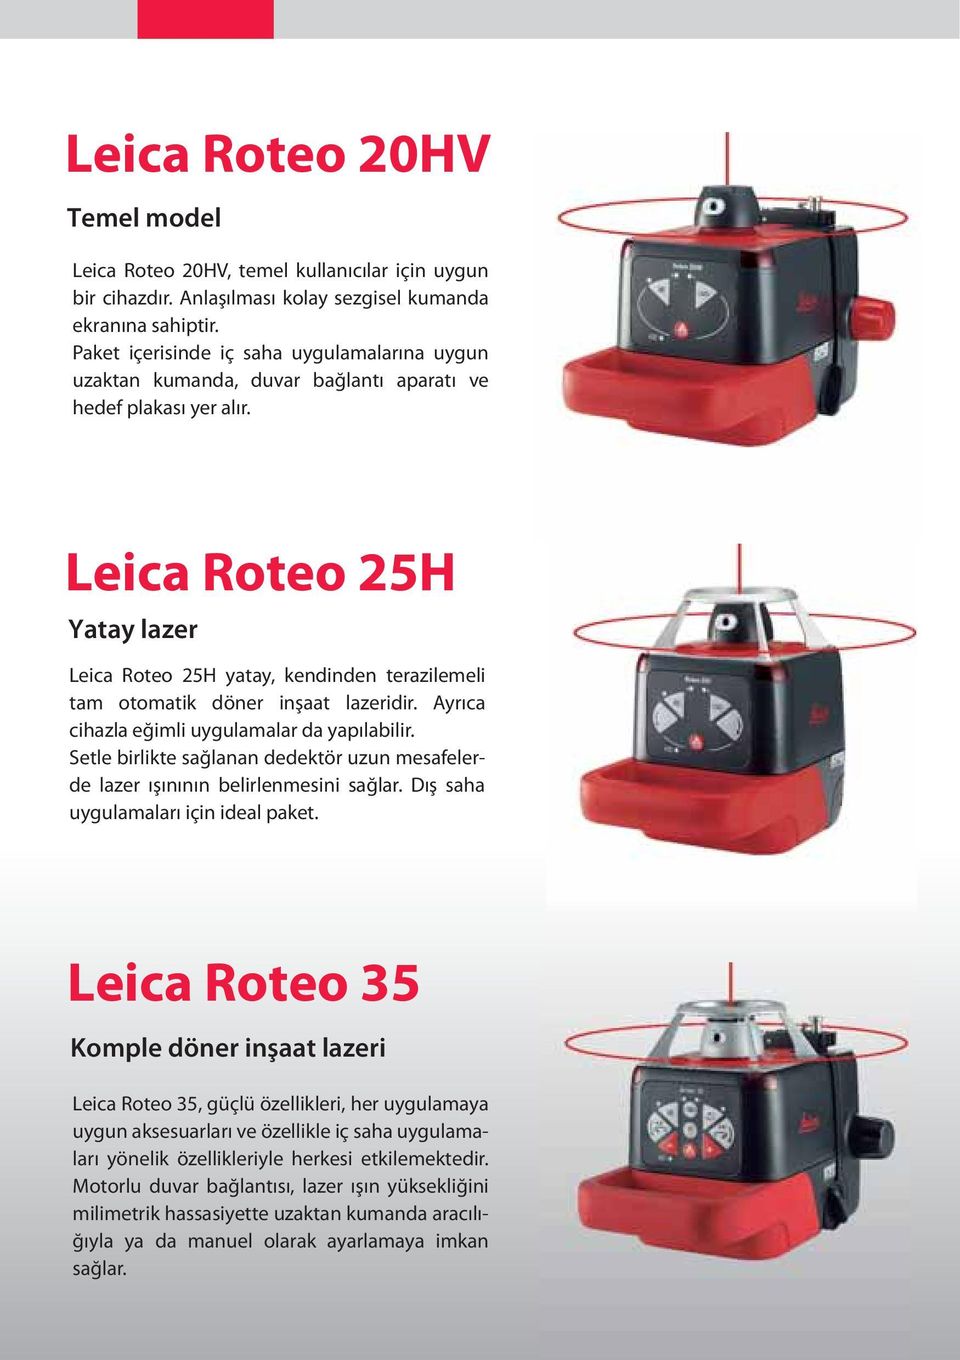 Leica Roteo 25H Yatay lazer Leica Roteo 25H yatay, kendinden terazilemeli tam otomatik döner inşaat lazeridir. Ayrıca cihazla eğimli uygulamalar da yapılabilir.